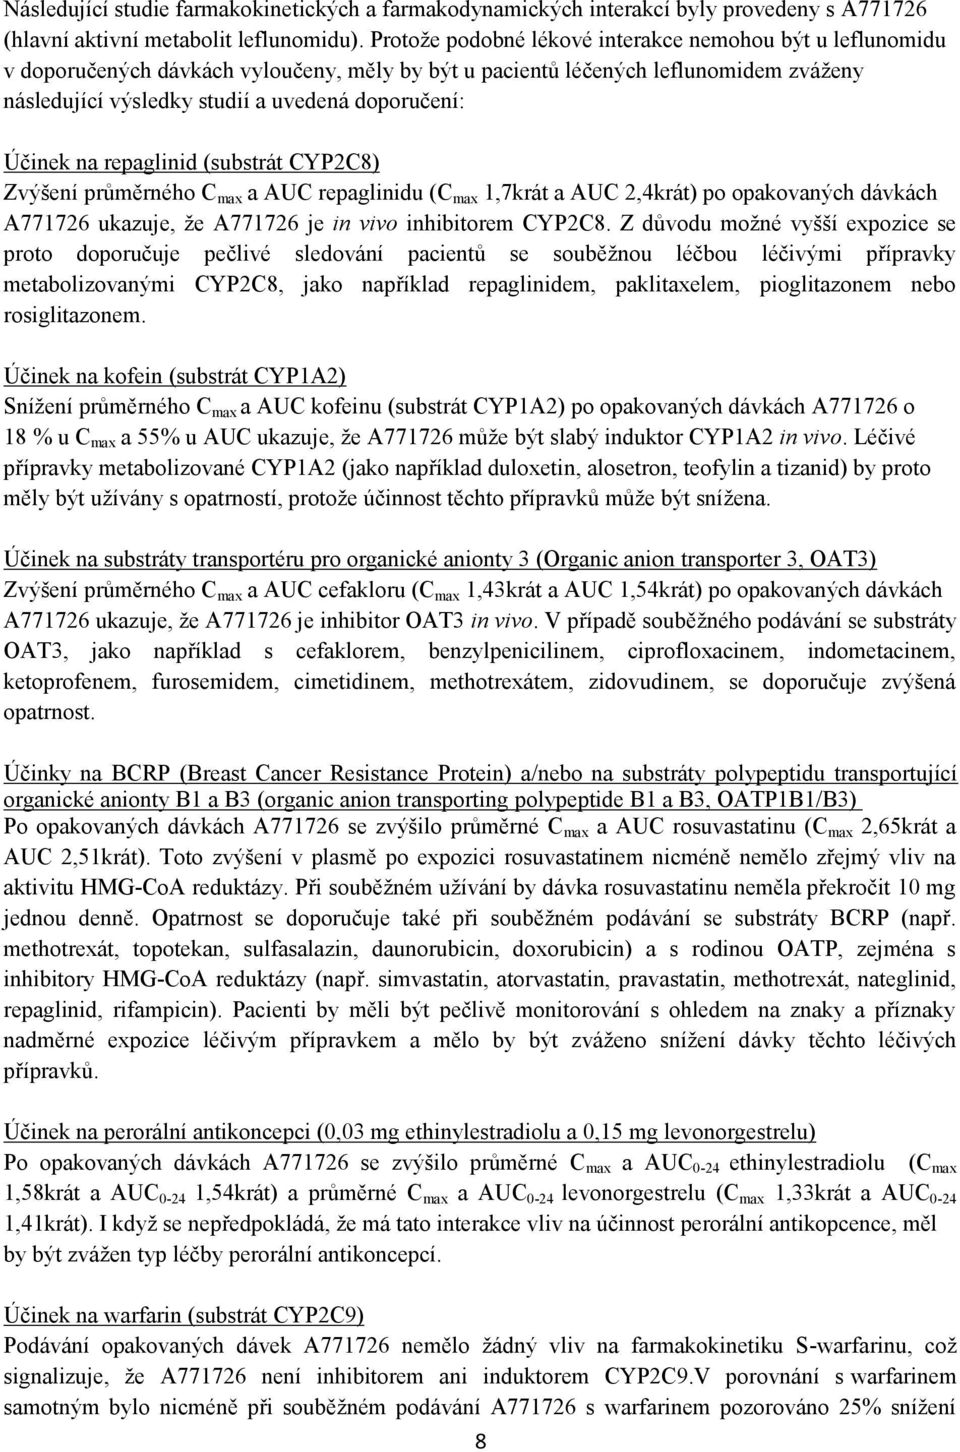 Účinek na repaglinid (substrát CYP2C8) Zvýšení průměrného C max a AUC repaglinidu (C max 1,7krát a AUC 2,4krát) po opakovaných dávkách A771726 ukazuje, že A771726 je in vivo inhibitorem CYP2C8.